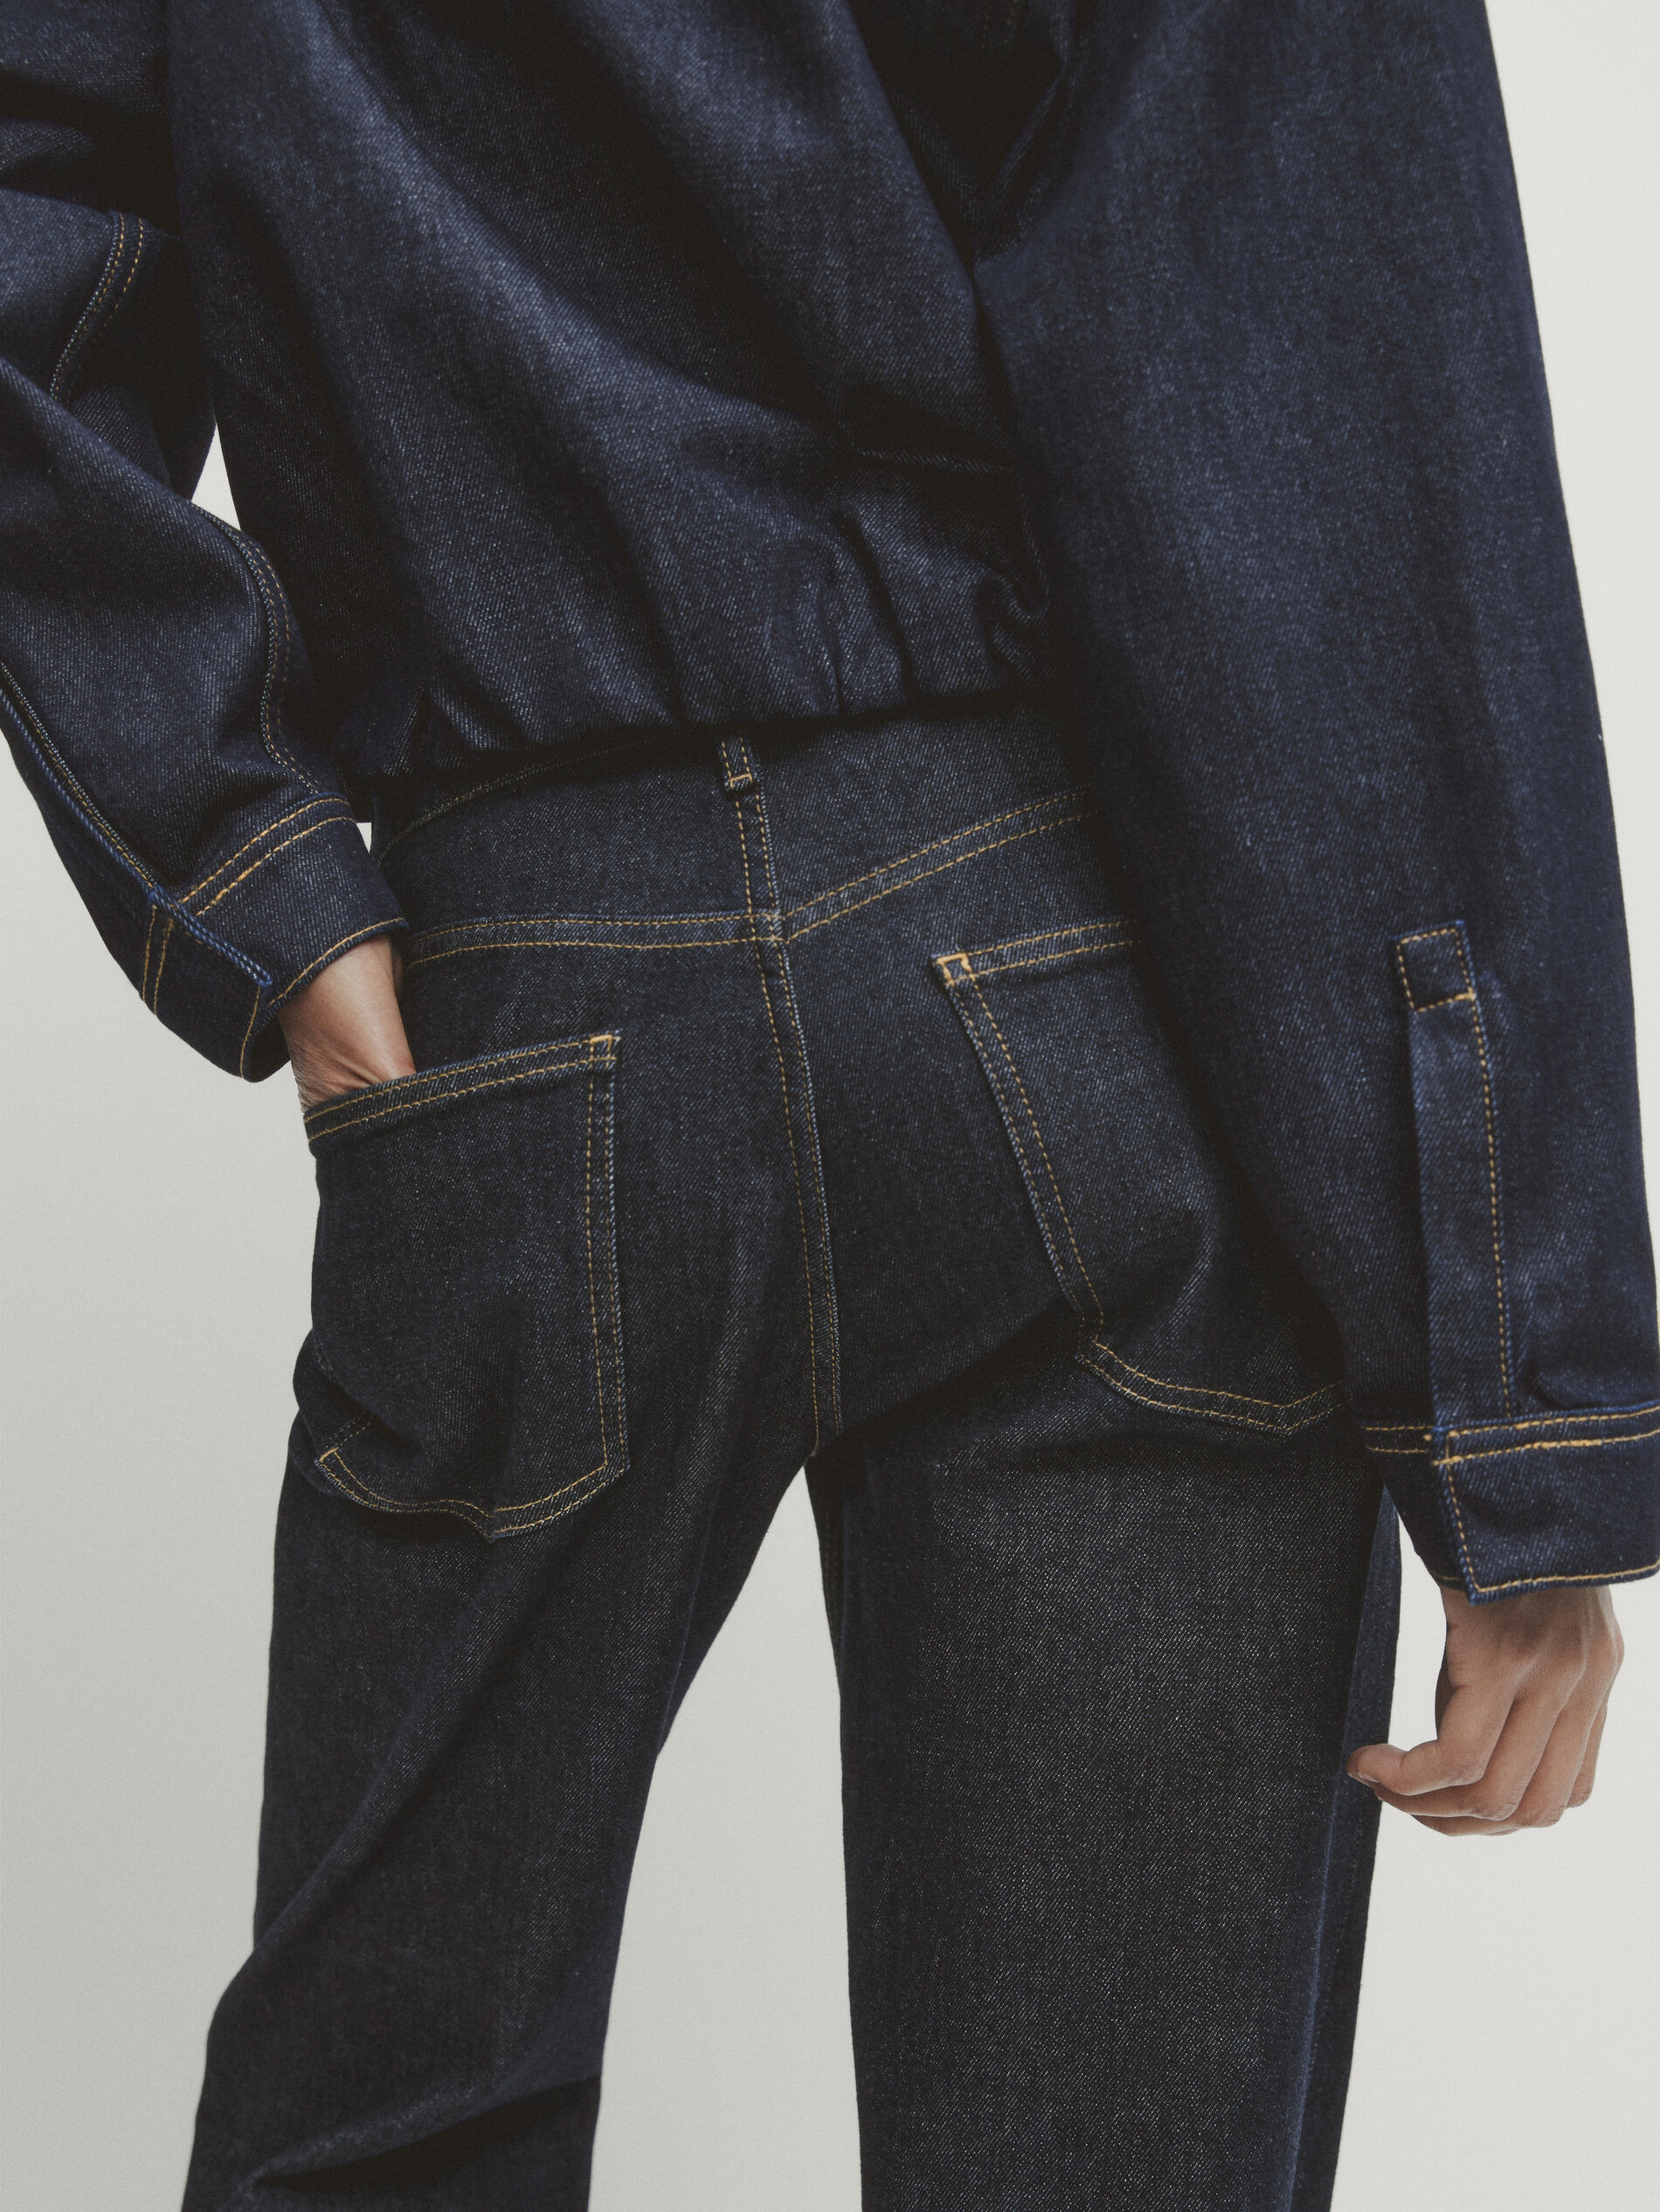 Cremieux Cremieux Premium Denim Slim-Fit Dark Wash Stretch Jeans | Dillard's